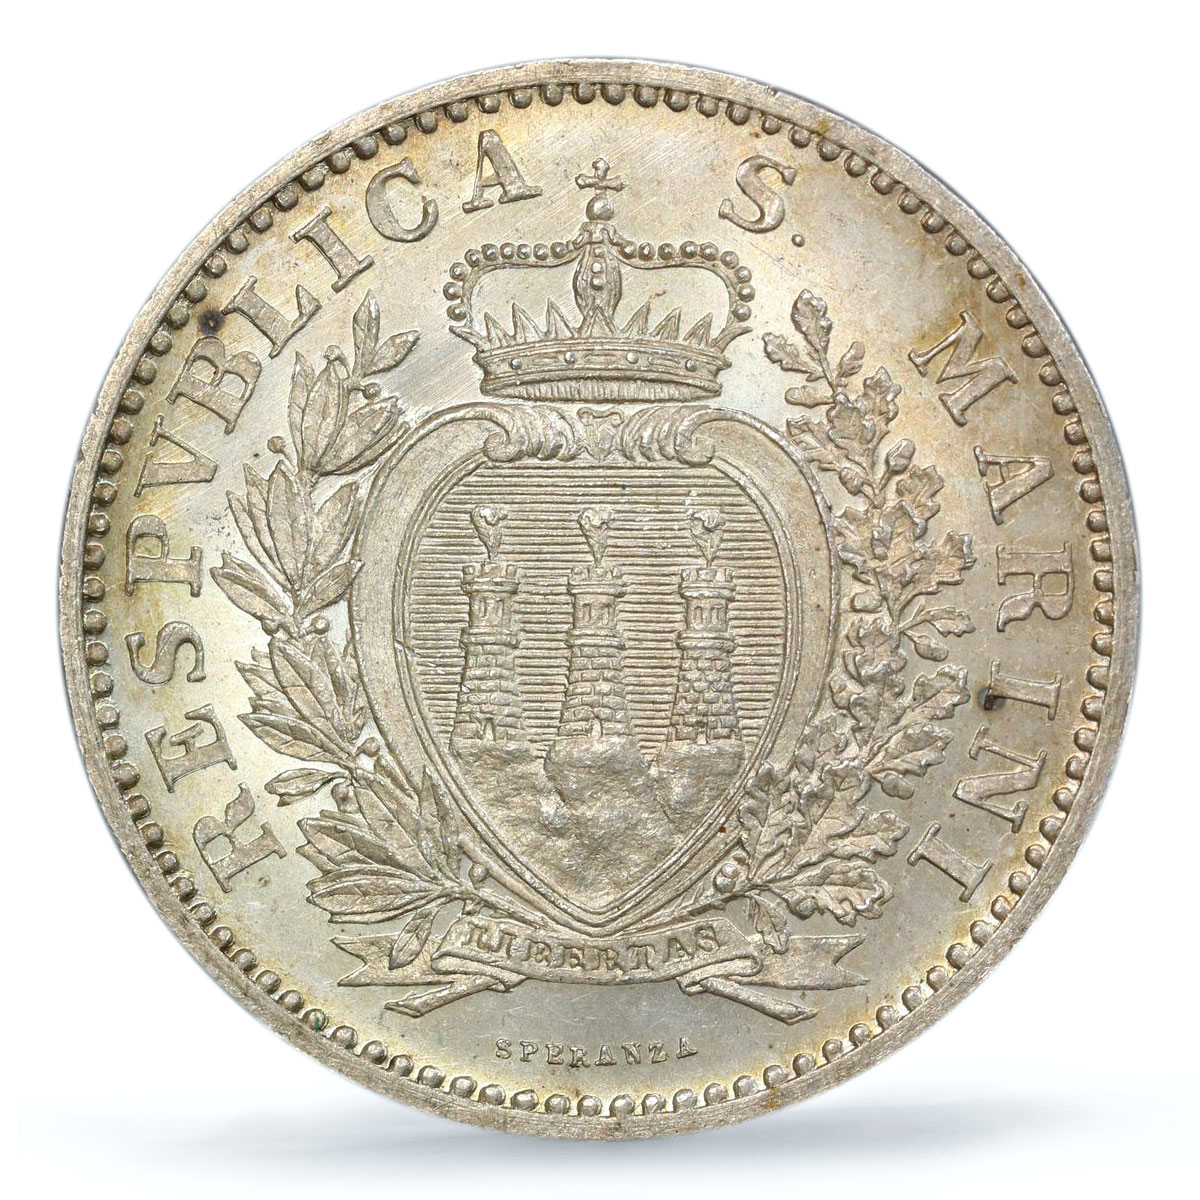 San Marino 1 lira Republic Coinage KM-4 MS65 PCGS silver coin 1898 R